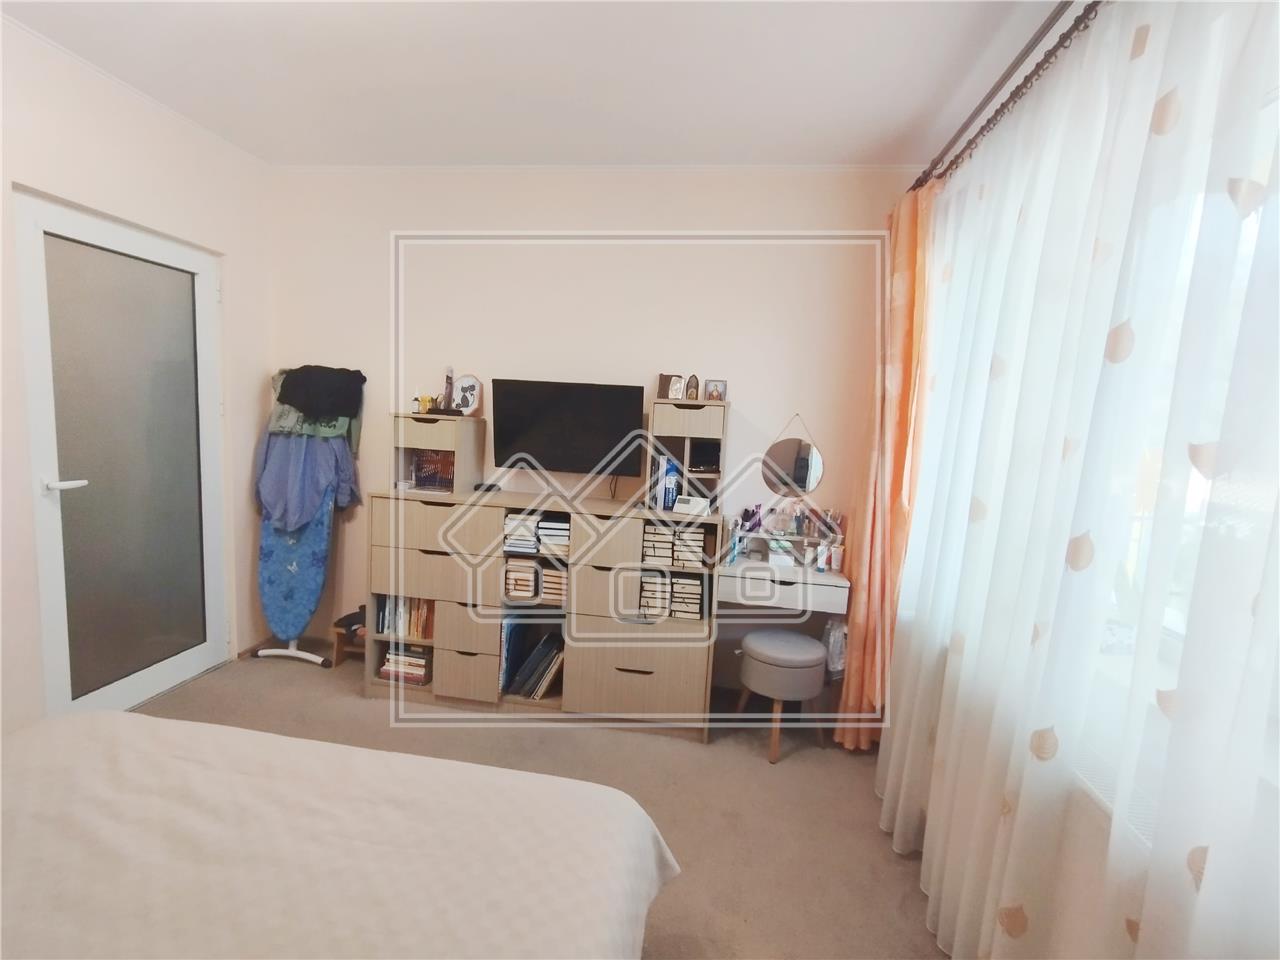 Apartament de vanzare in Sibiu - 2 camere - decomandat - cu gradina